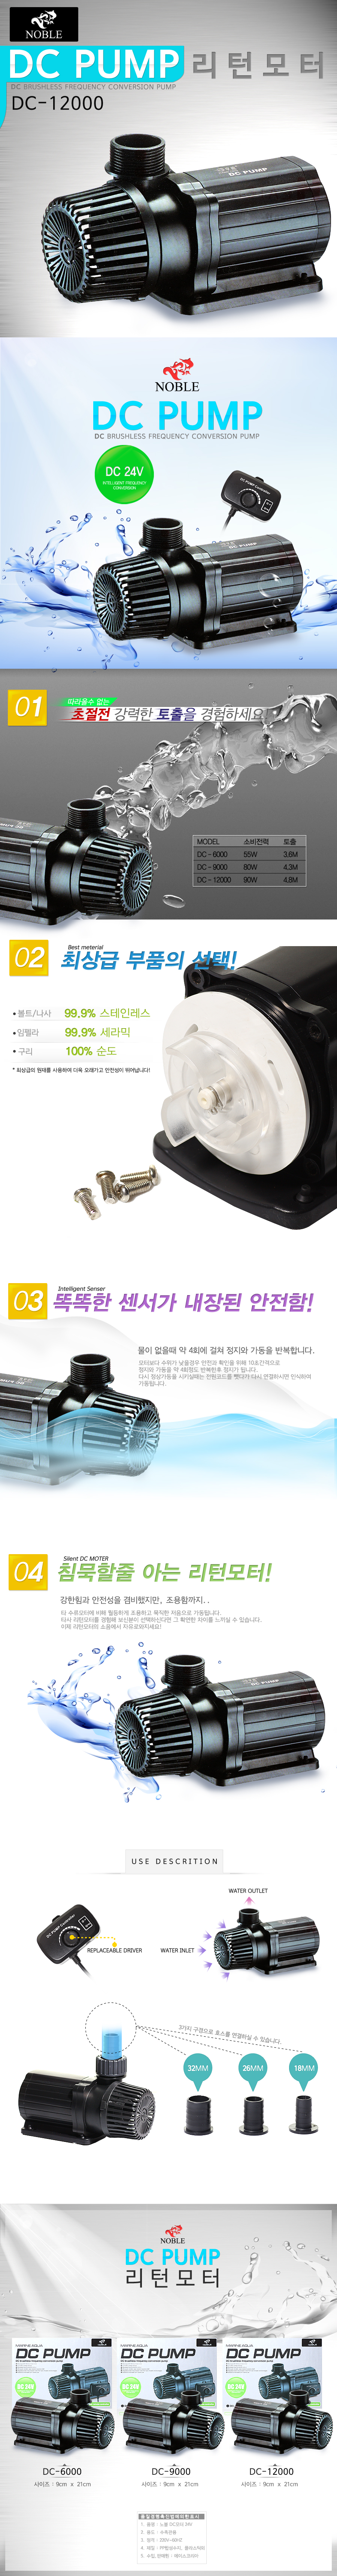 noble-dc-water-pump-detail_013138.jpg